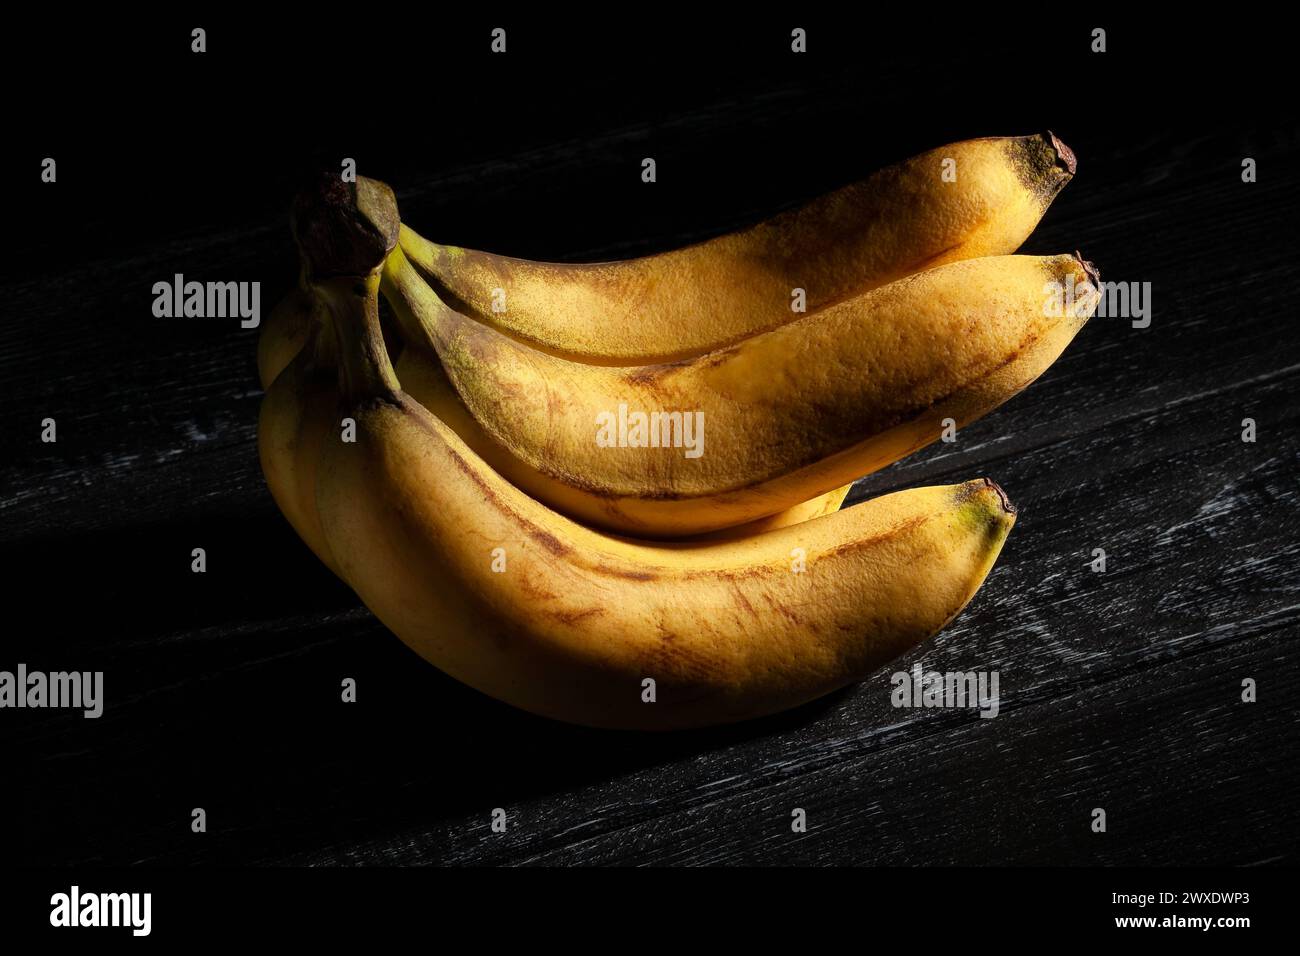 bouquet de bananes sur fond noir Banque D'Images